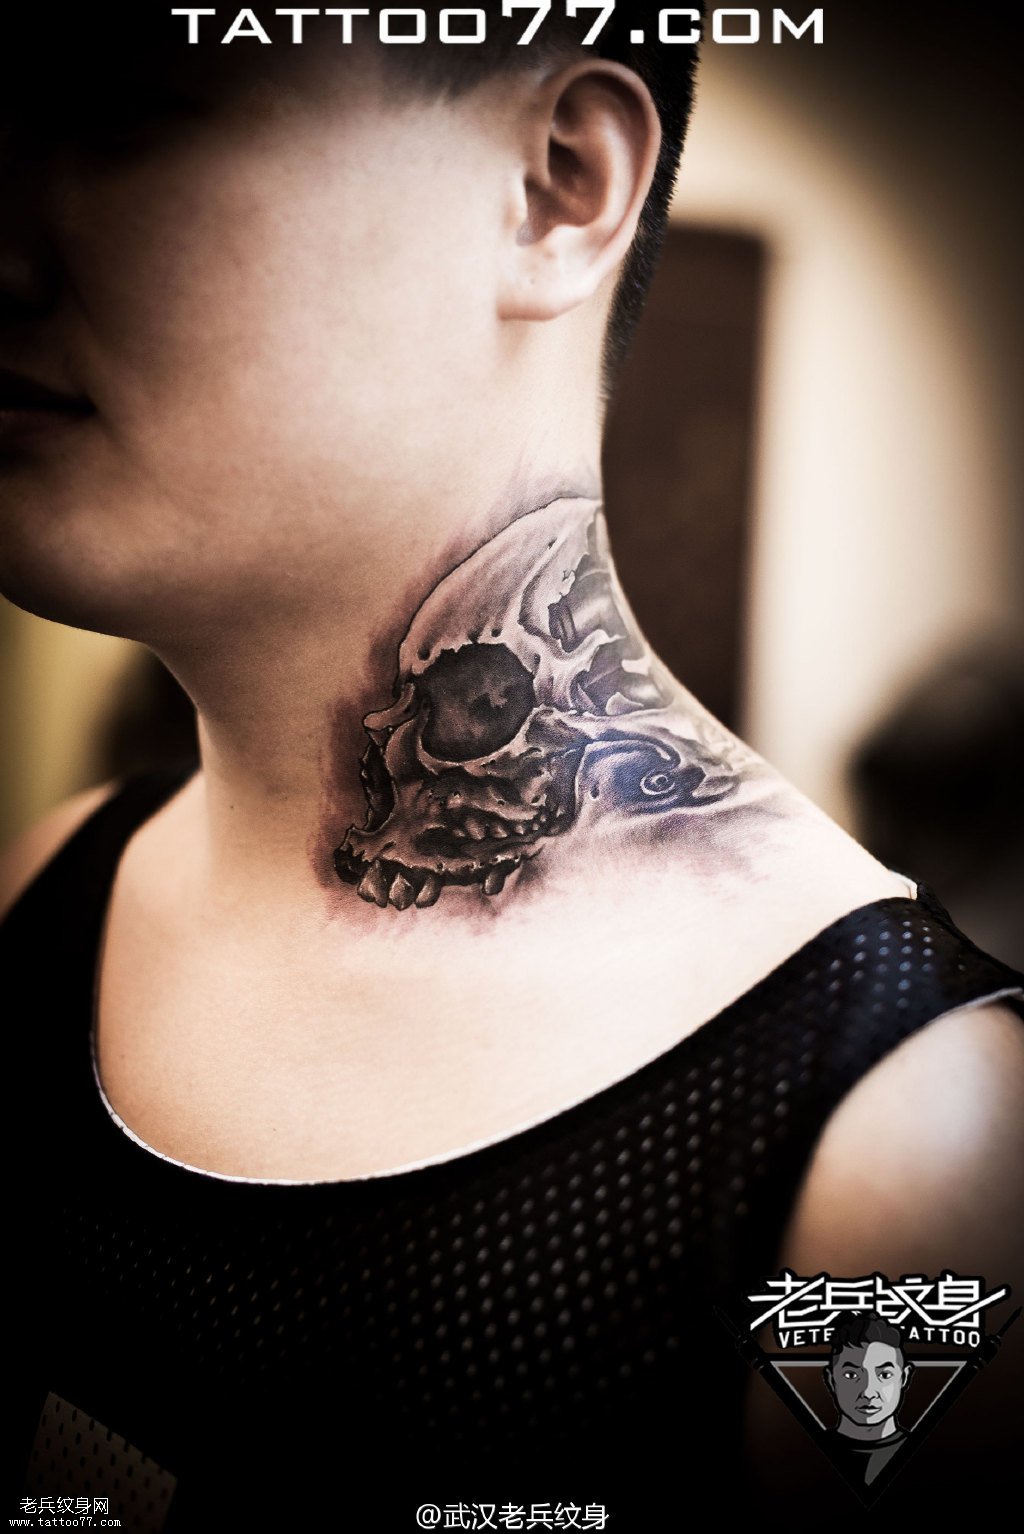 纹身最疼部位之一 脖子骷髅纹身图案作品